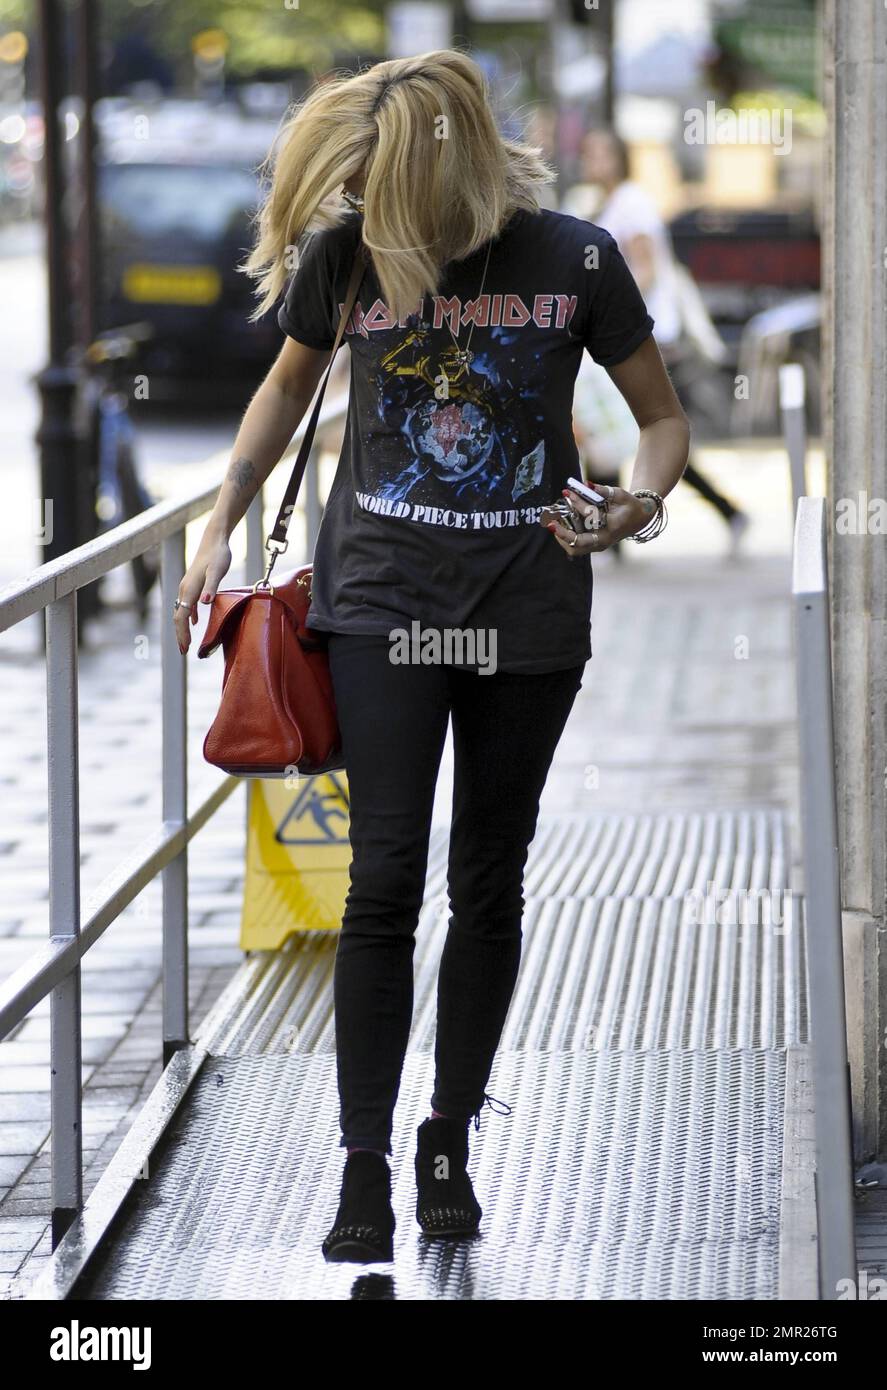 Fearne Cotton luce un look rockero en una camiseta vintage de Iron Maiden  cuando sale de BBC Radio 1. Londres, Reino Unido. 7/6/11 Fotografía de  stock - Alamy